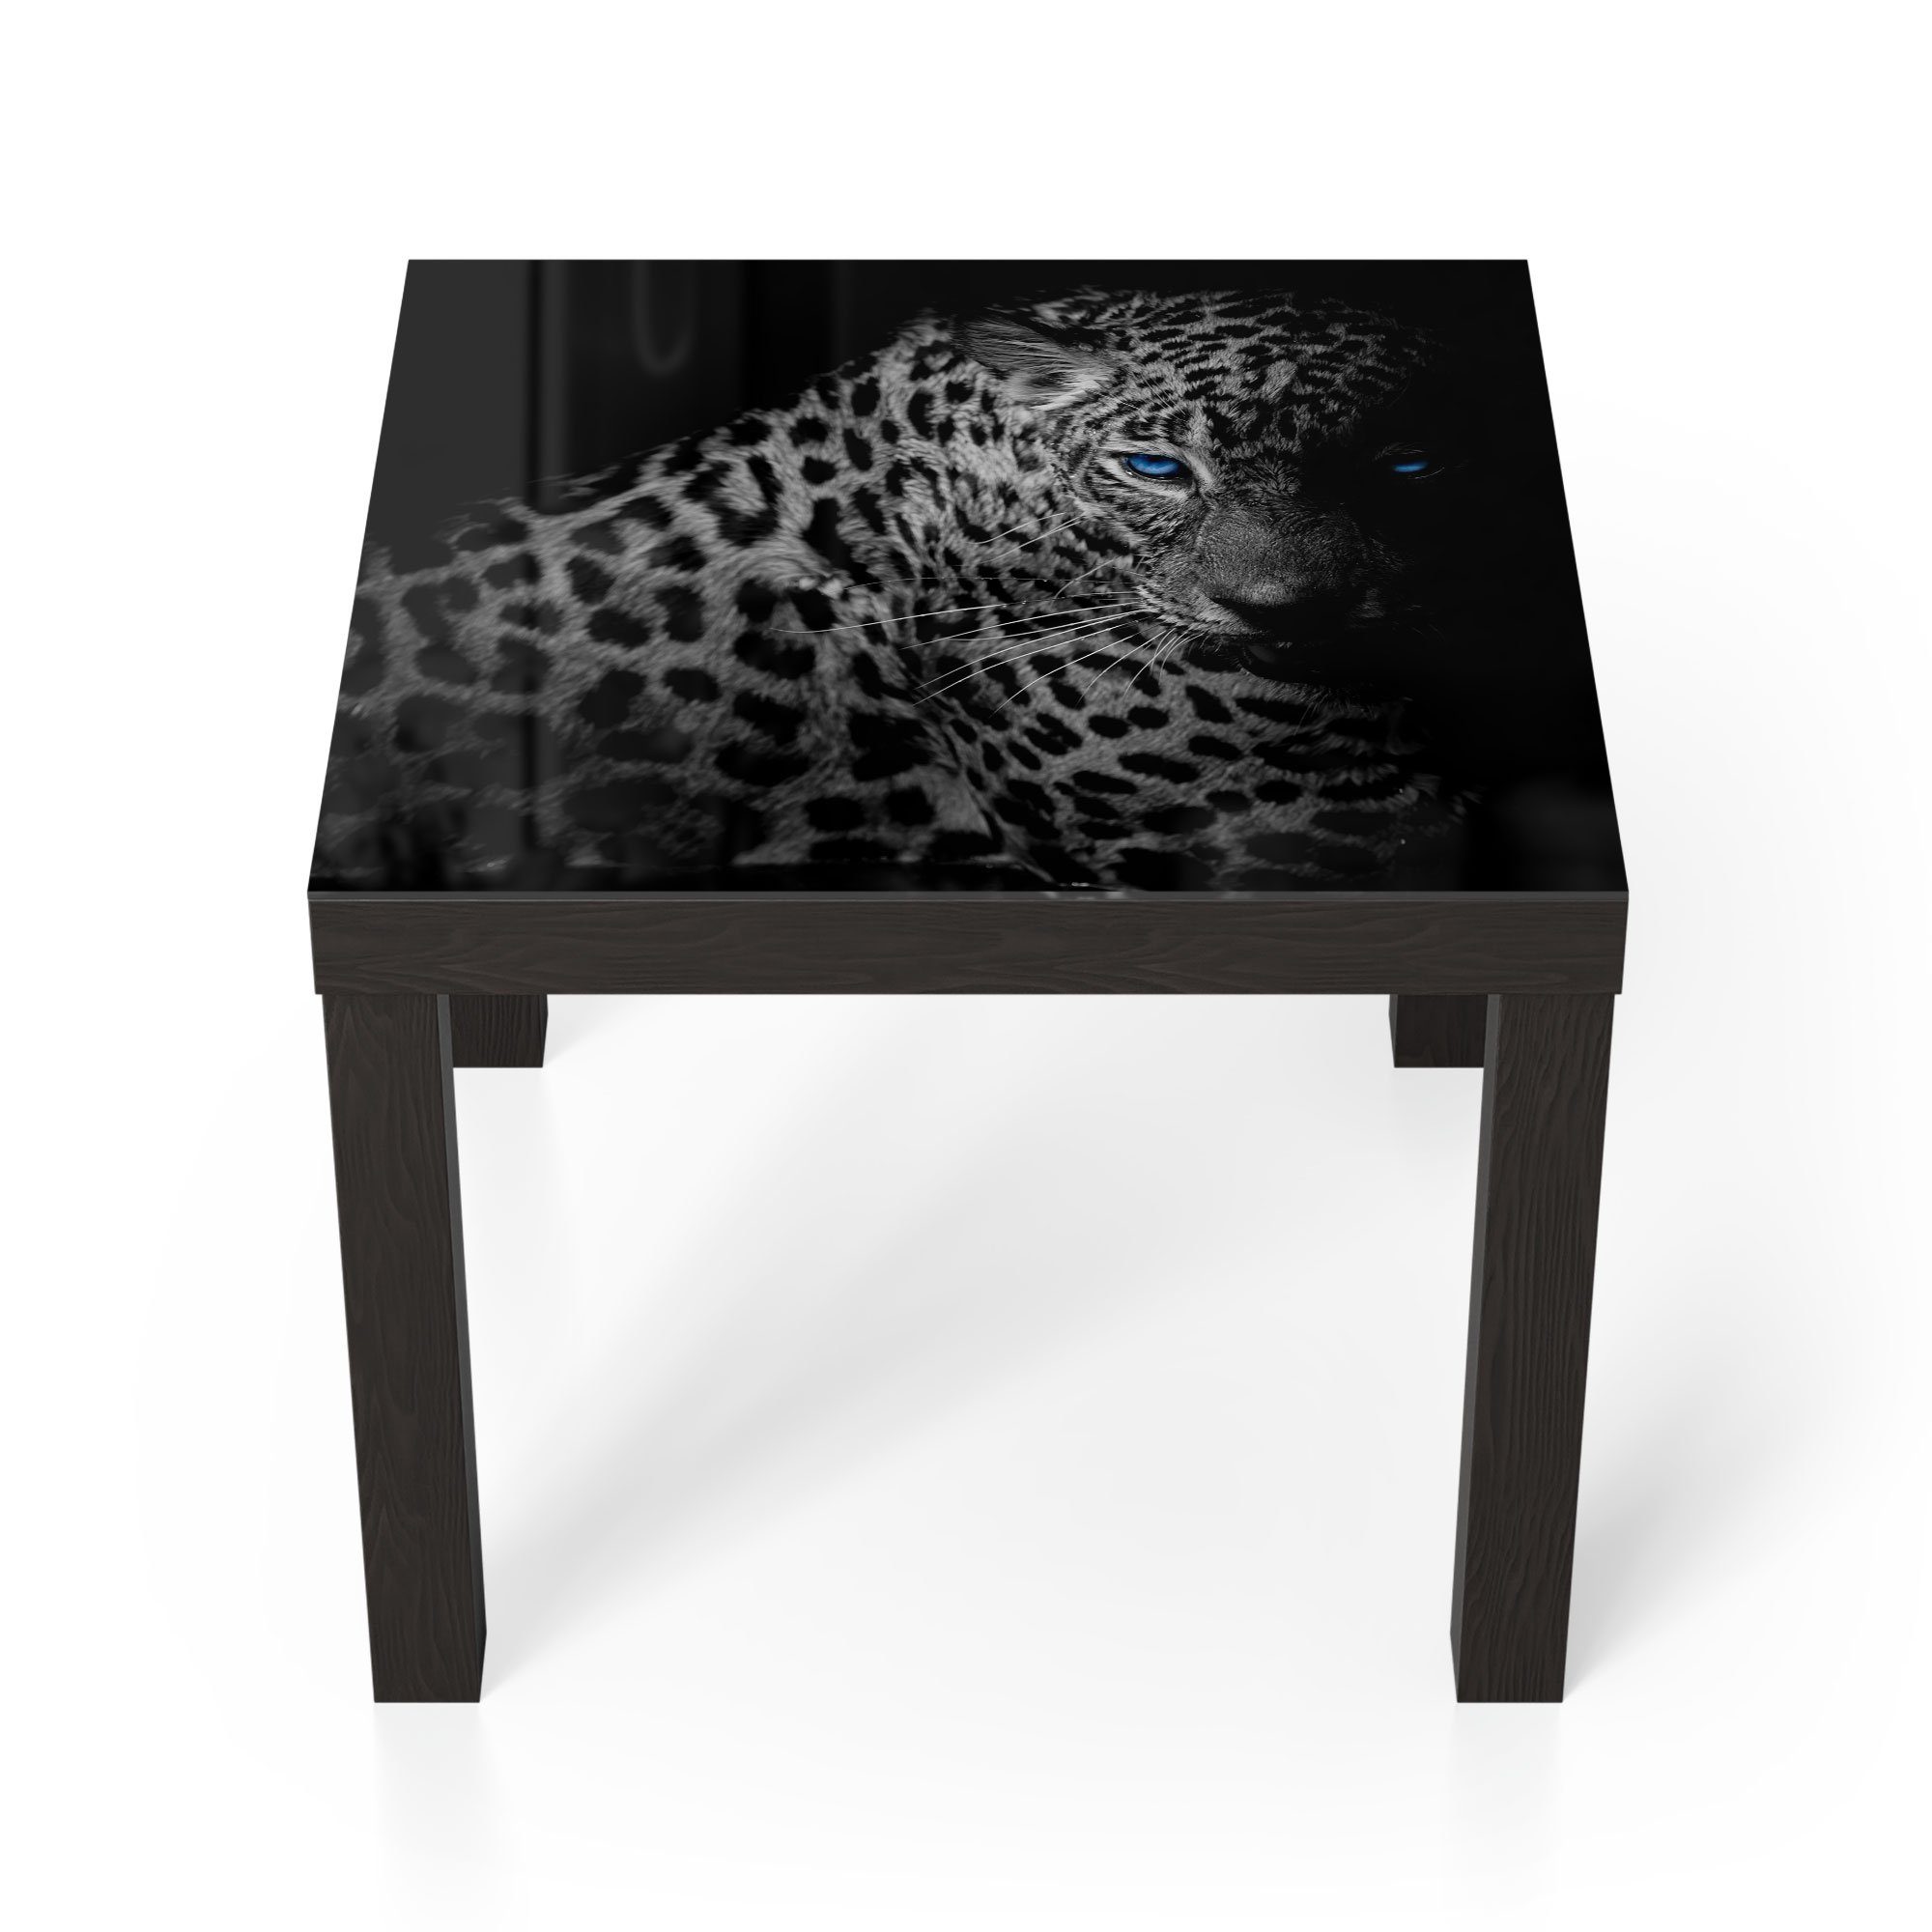 DEQORI Couchtisch 'Leopard mit blauen Augen', Glas Beistelltisch Glastisch modern Schwarz